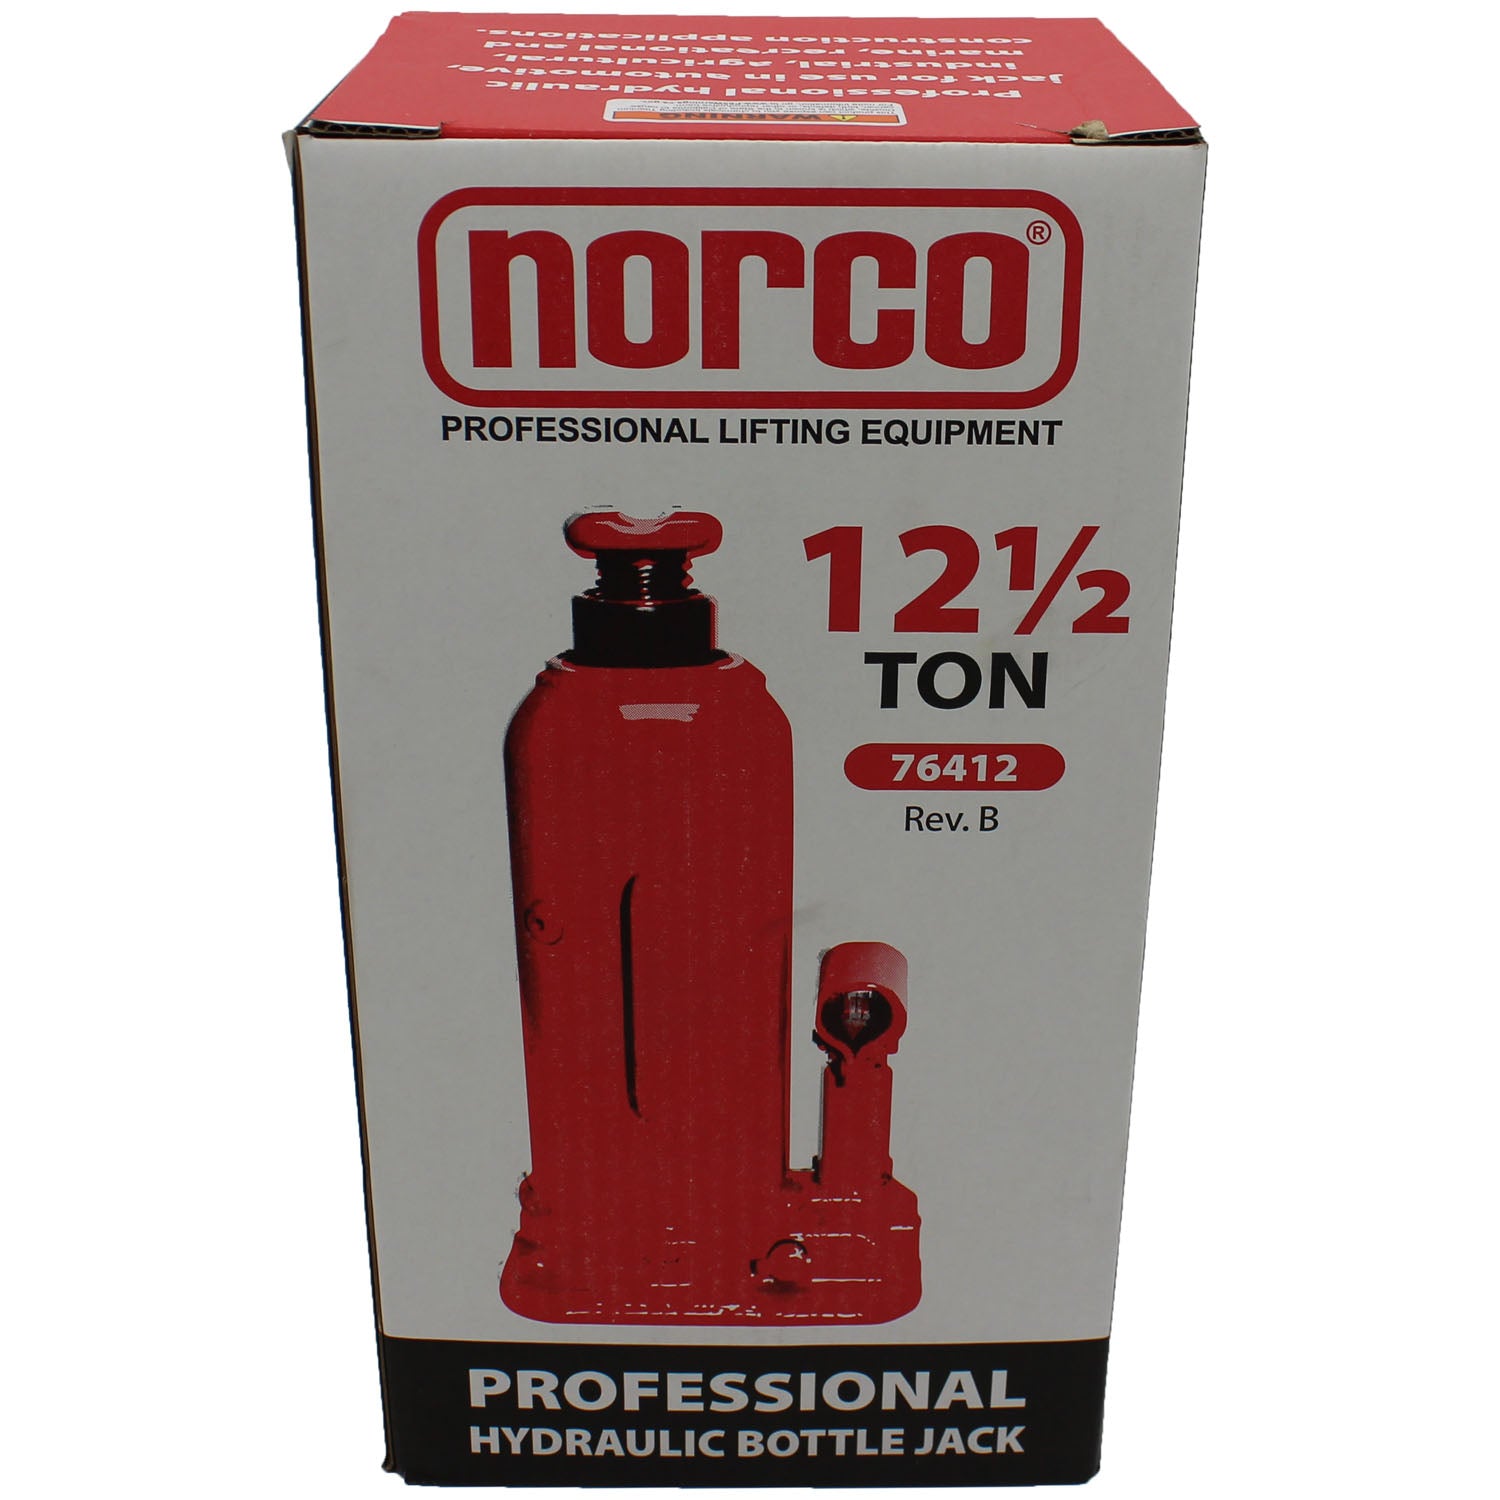 Norco 76412 12-Ton Hydraulic Bottle Jack